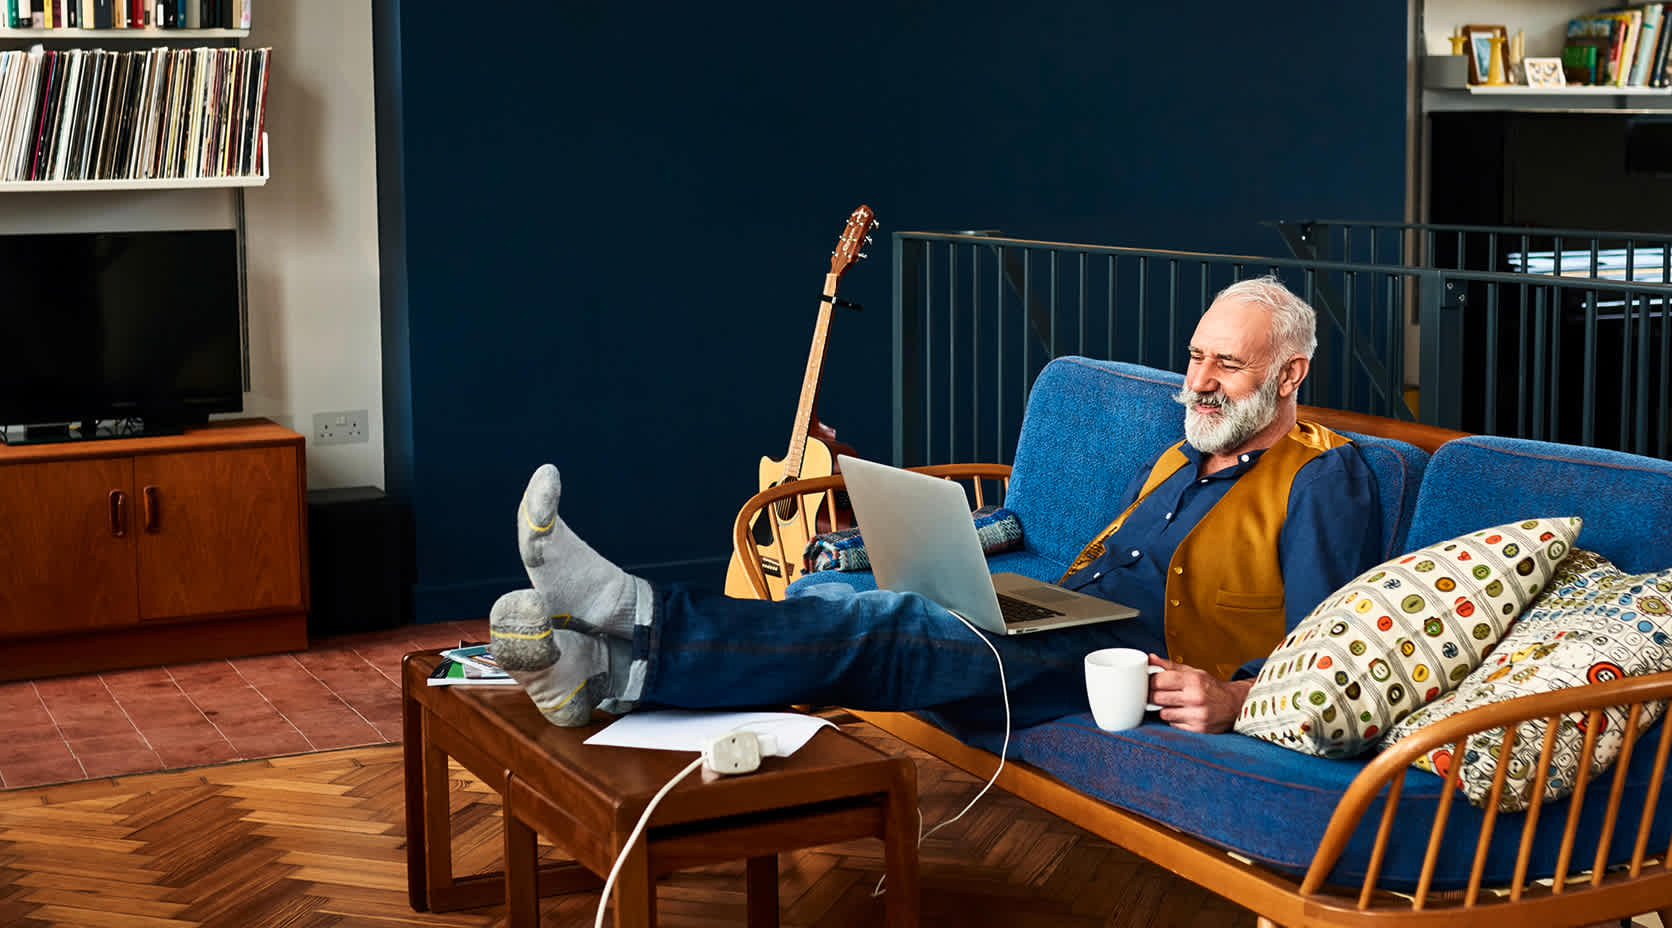 Älterer Mann auf der Couch mit Laptop auf den Beinen.

